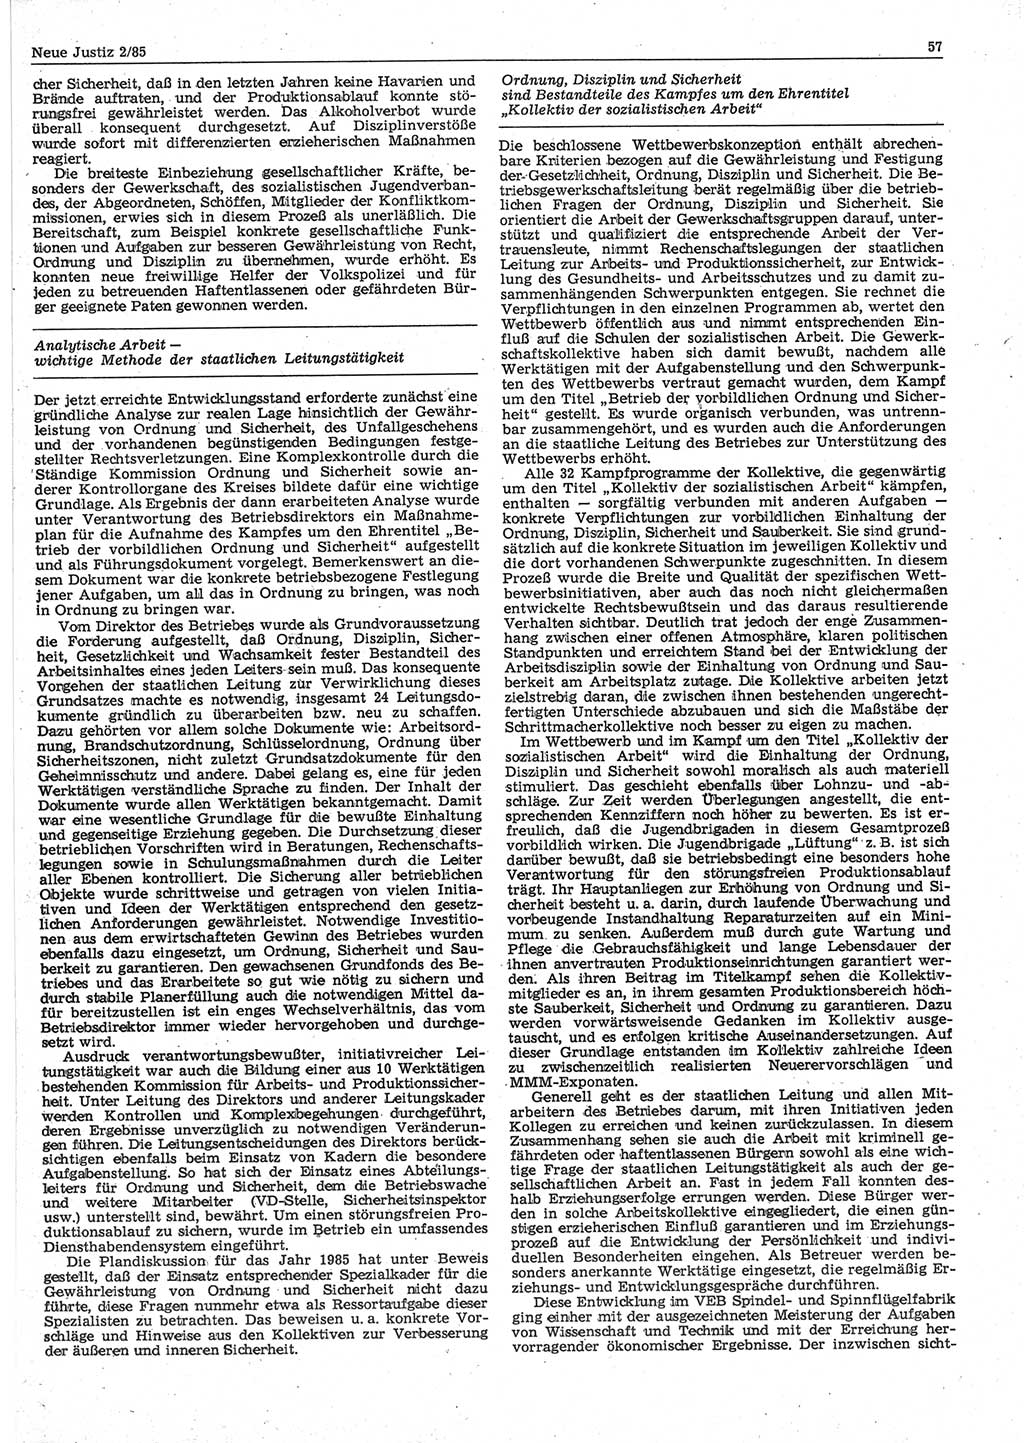 Neue Justiz (NJ), Zeitschrift für sozialistisches Recht und Gesetzlichkeit [Deutsche Demokratische Republik (DDR)], 39. Jahrgang 1985, Seite 57 (NJ DDR 1985, S. 57)